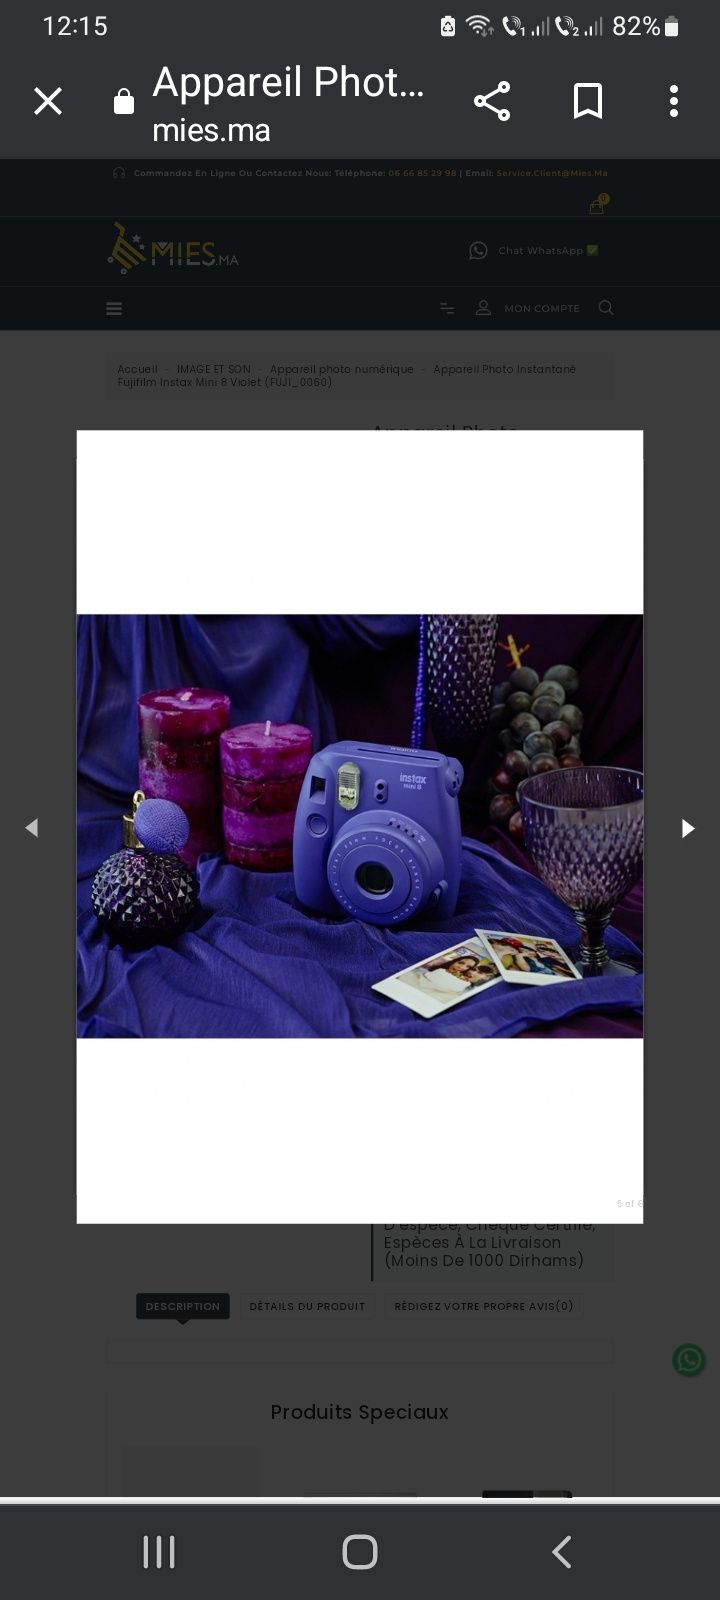 Cameră Fujifilm Instax mini 8, violet